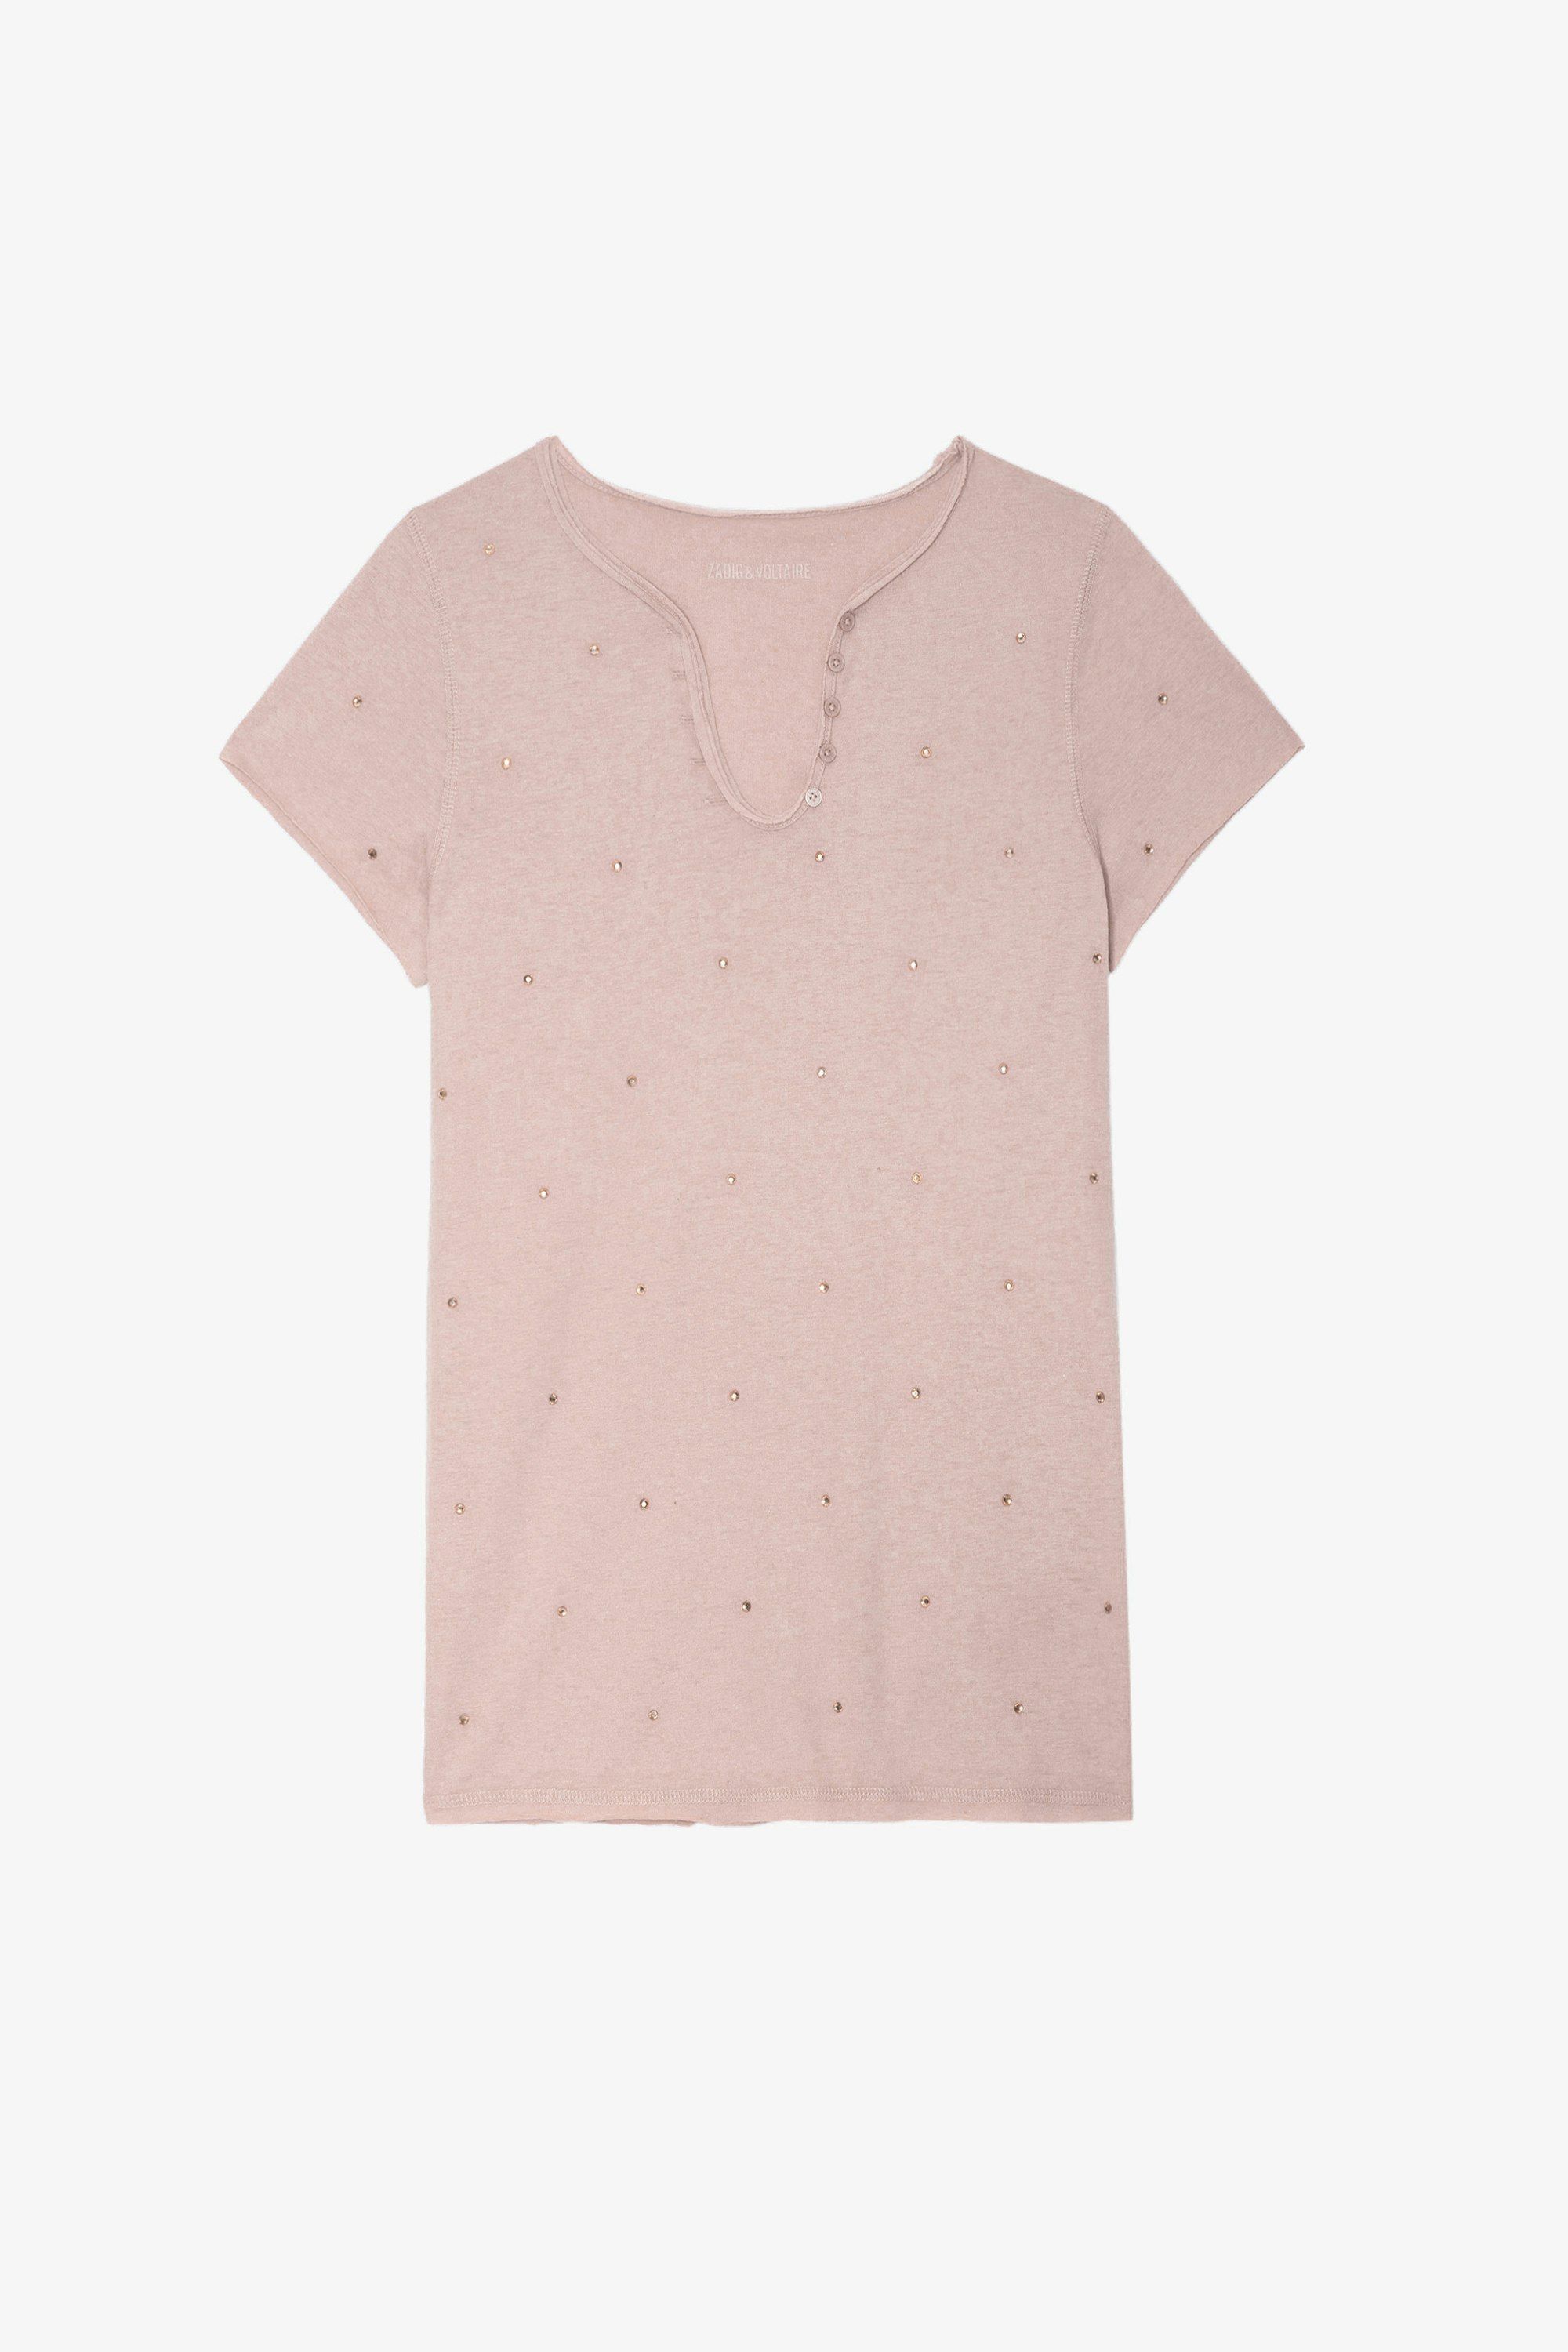 T-shirt Serafino Strass - T-shirt serafino rosa da donna decorata con strass.